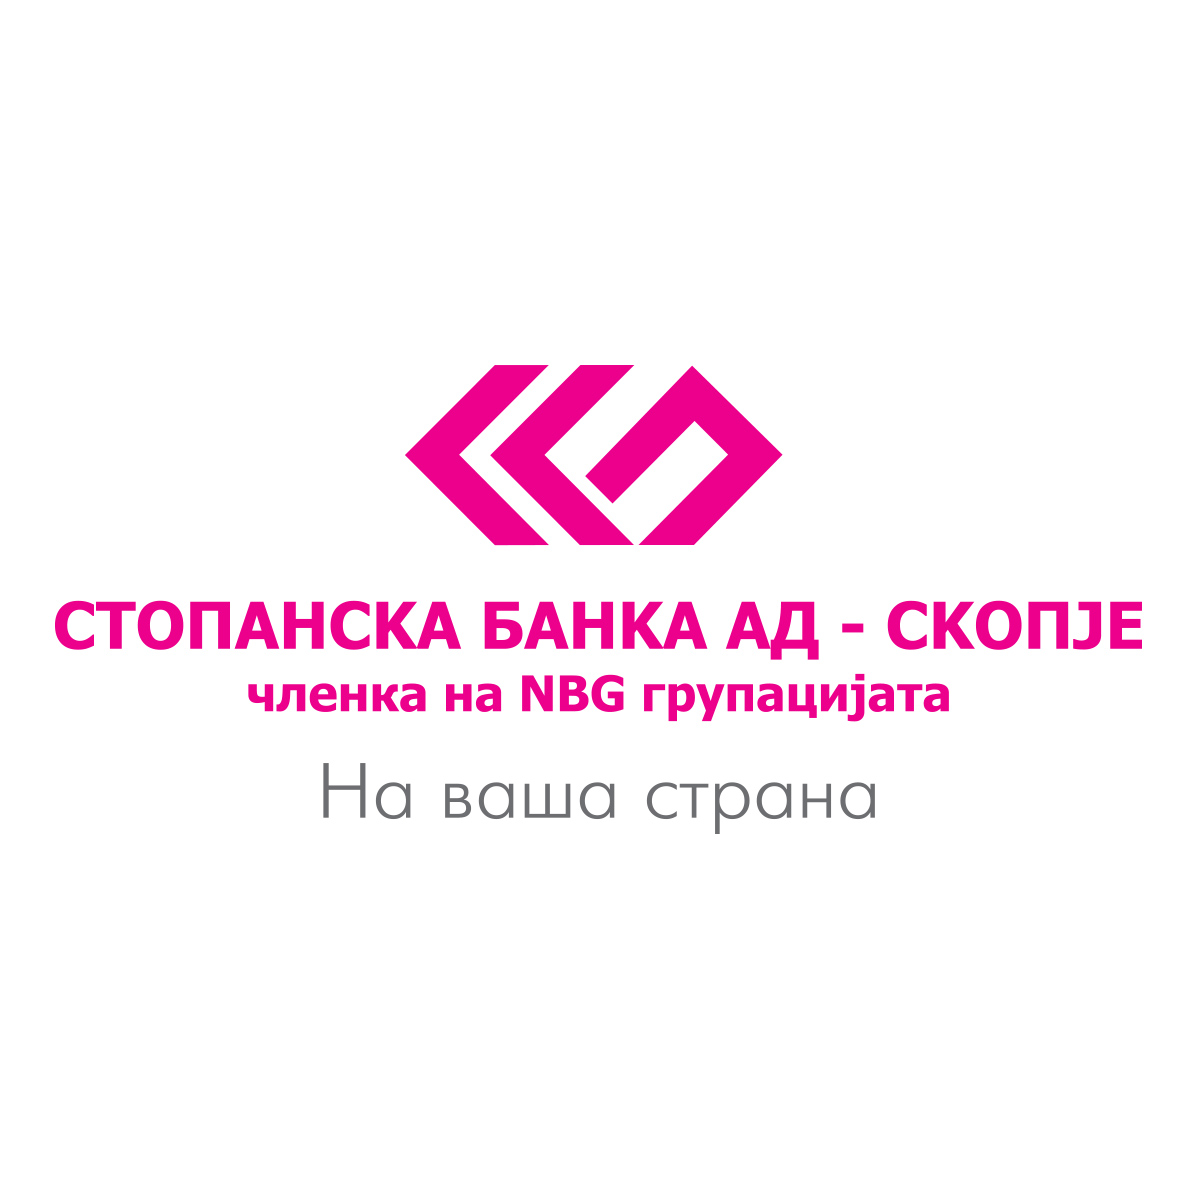 Стопанска Банка АД-Скопје обезбедува студентска пракса